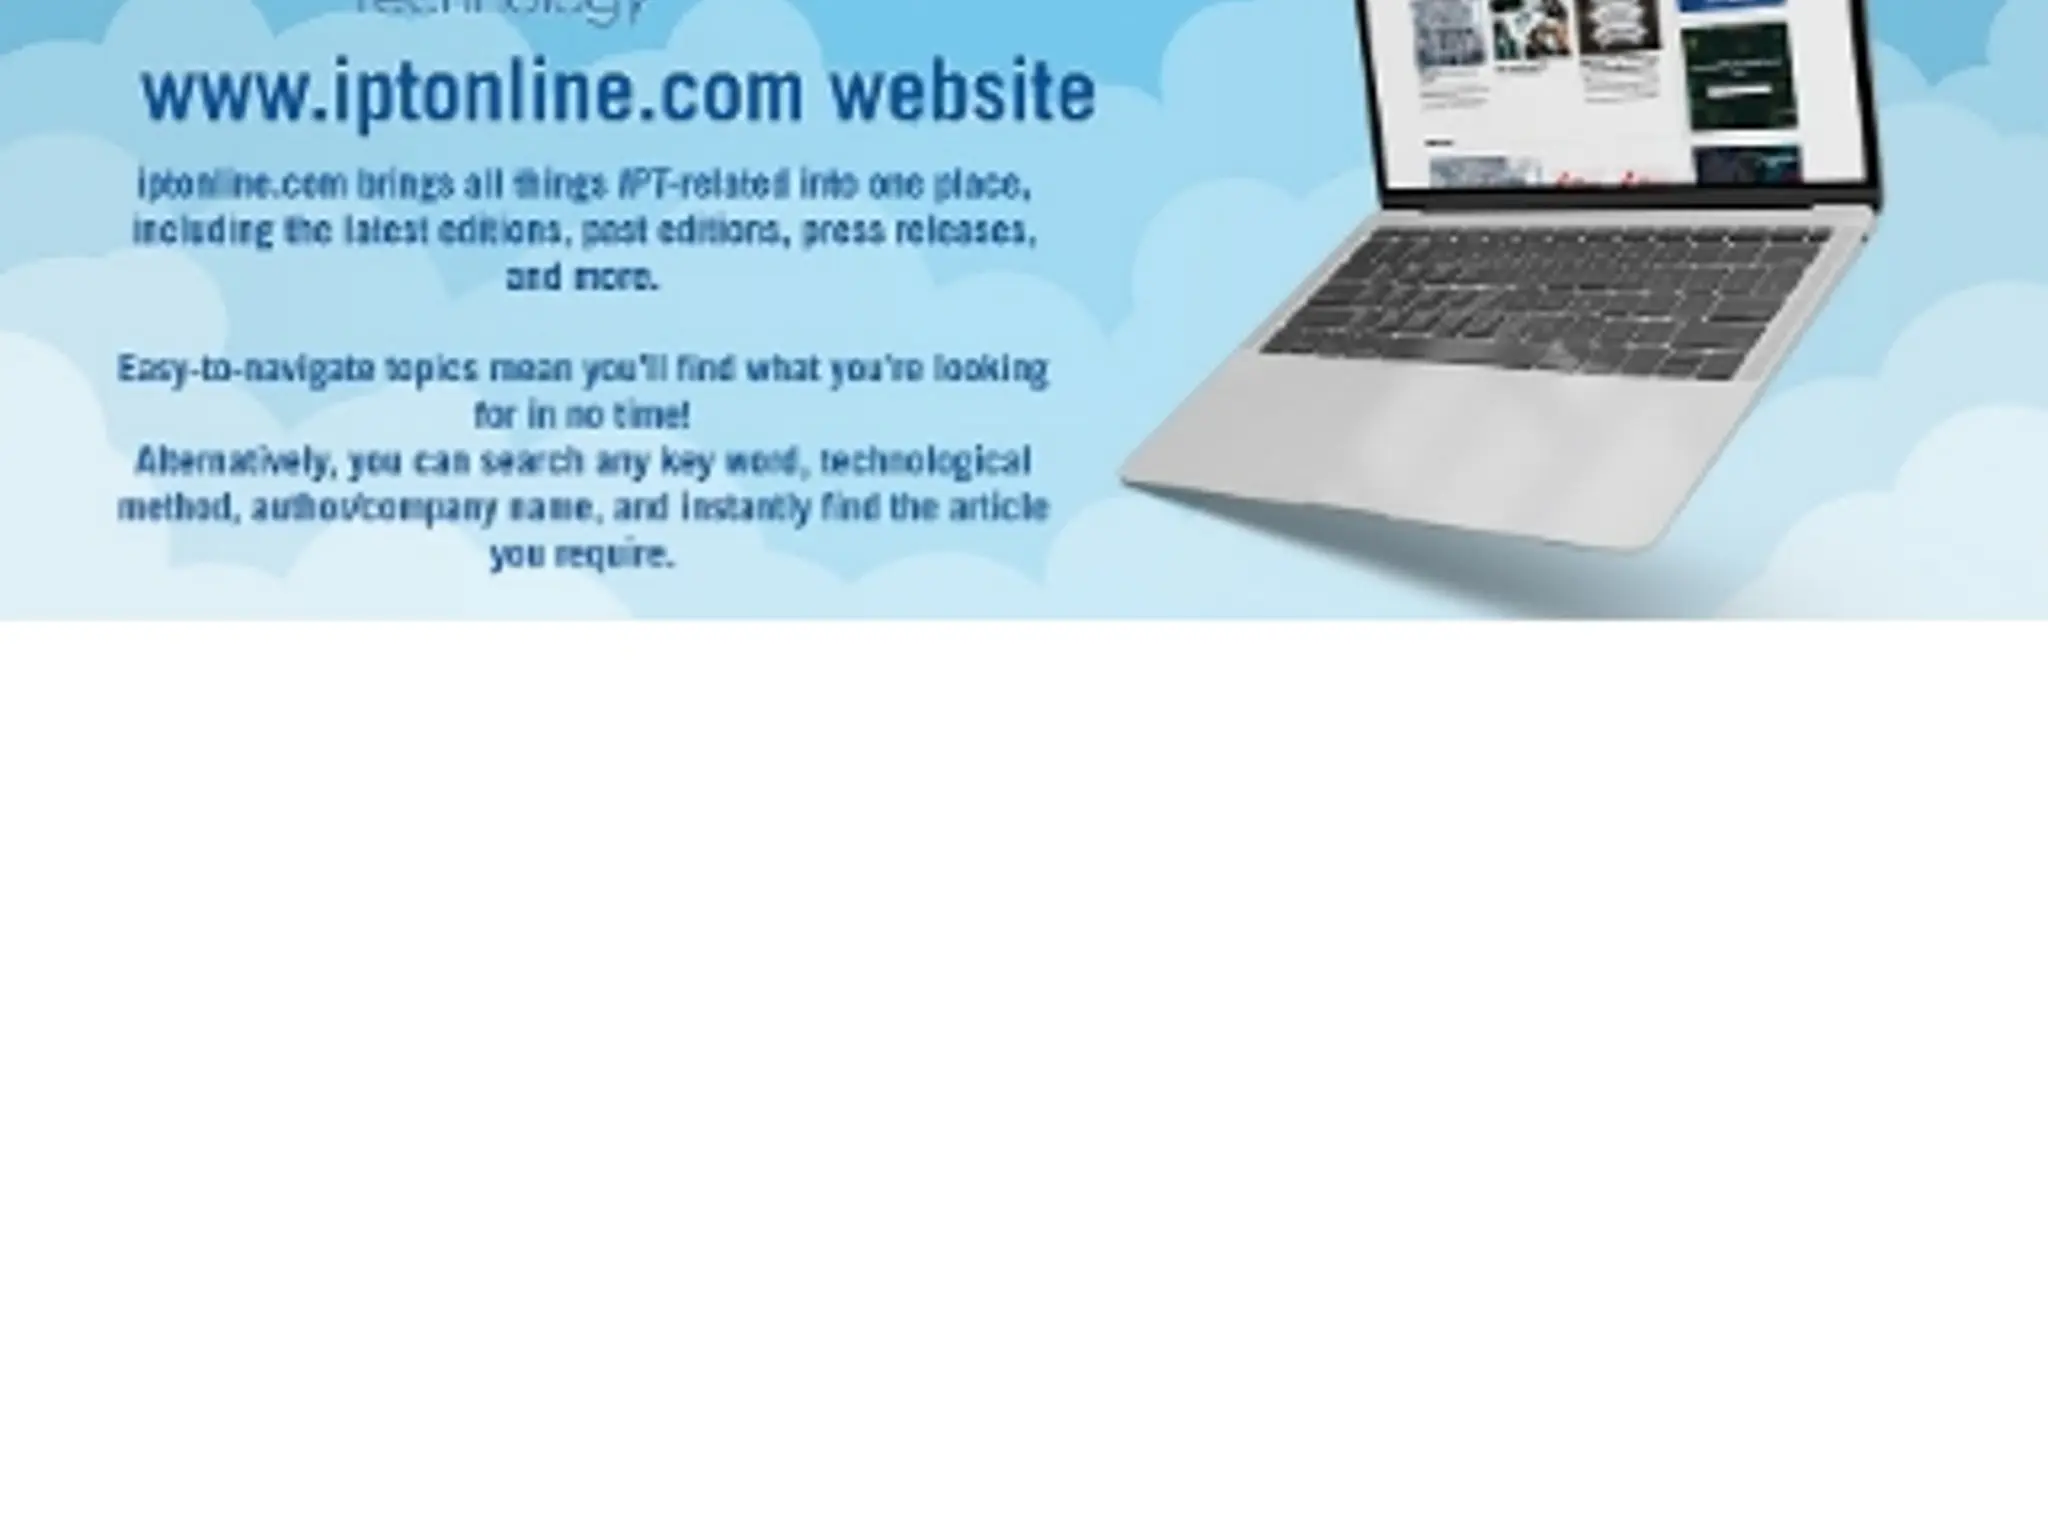 IPT Online